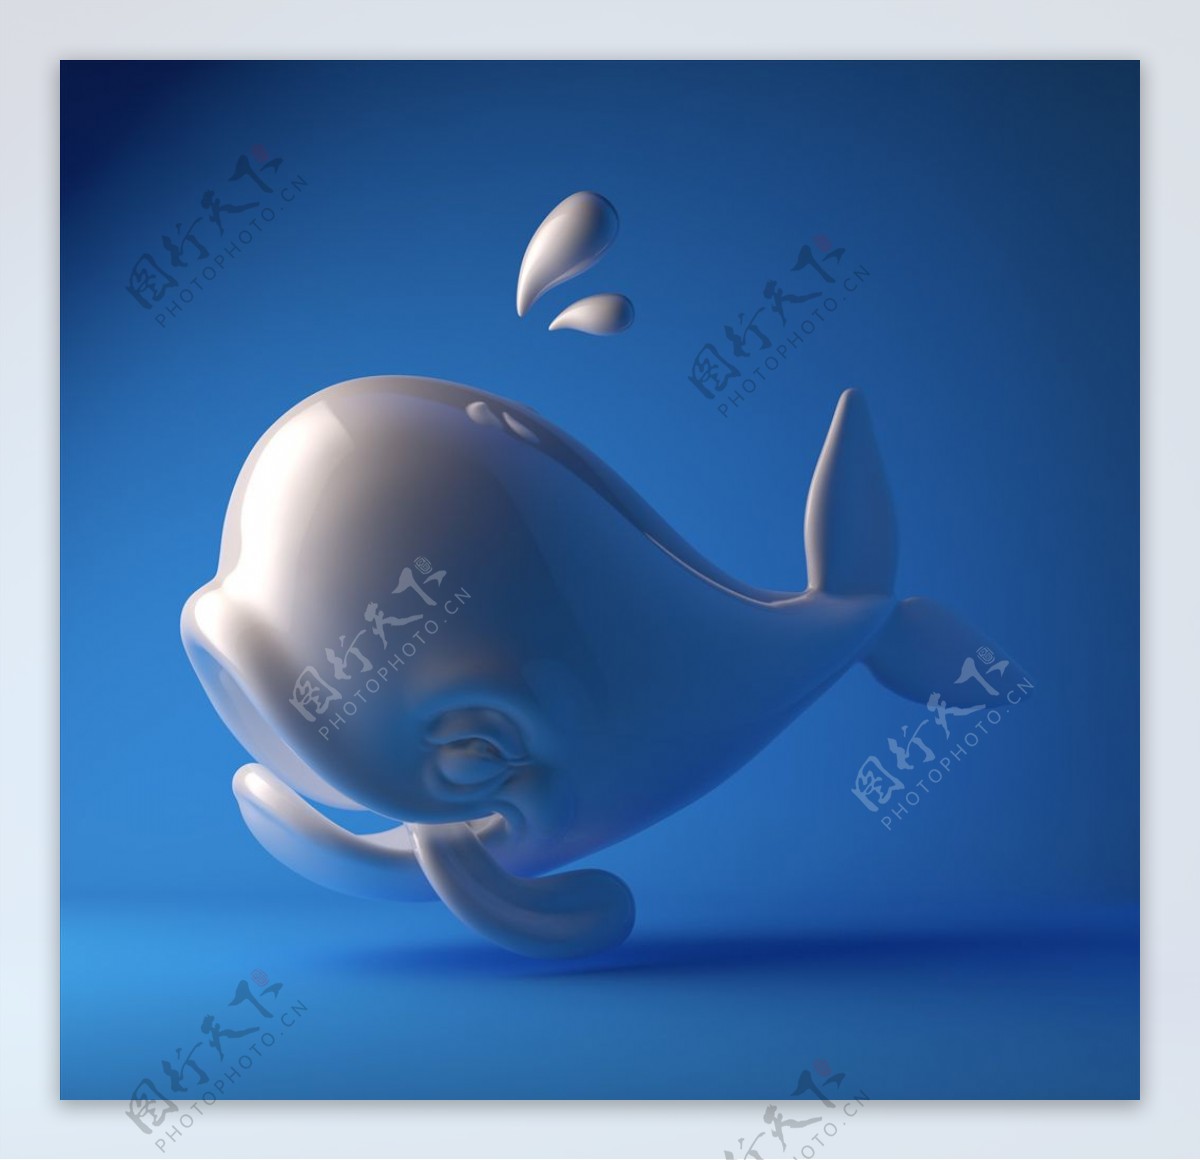 C4D模型鲸鱼图片